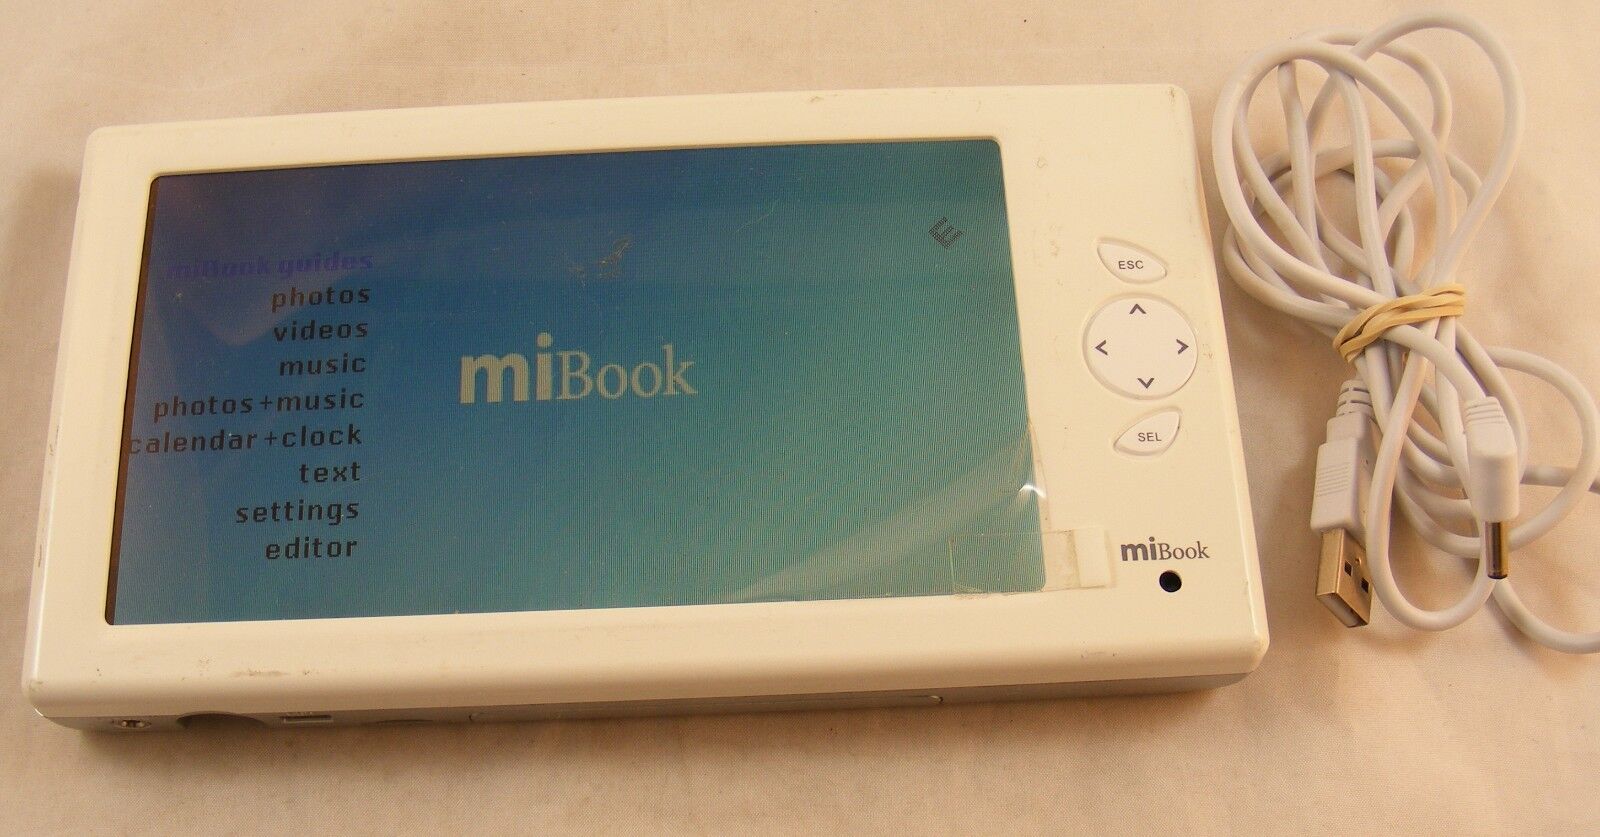 MiBook eBook Reader Photoco Mi Book Device 6" Screen w/ Remote - White (Tested)